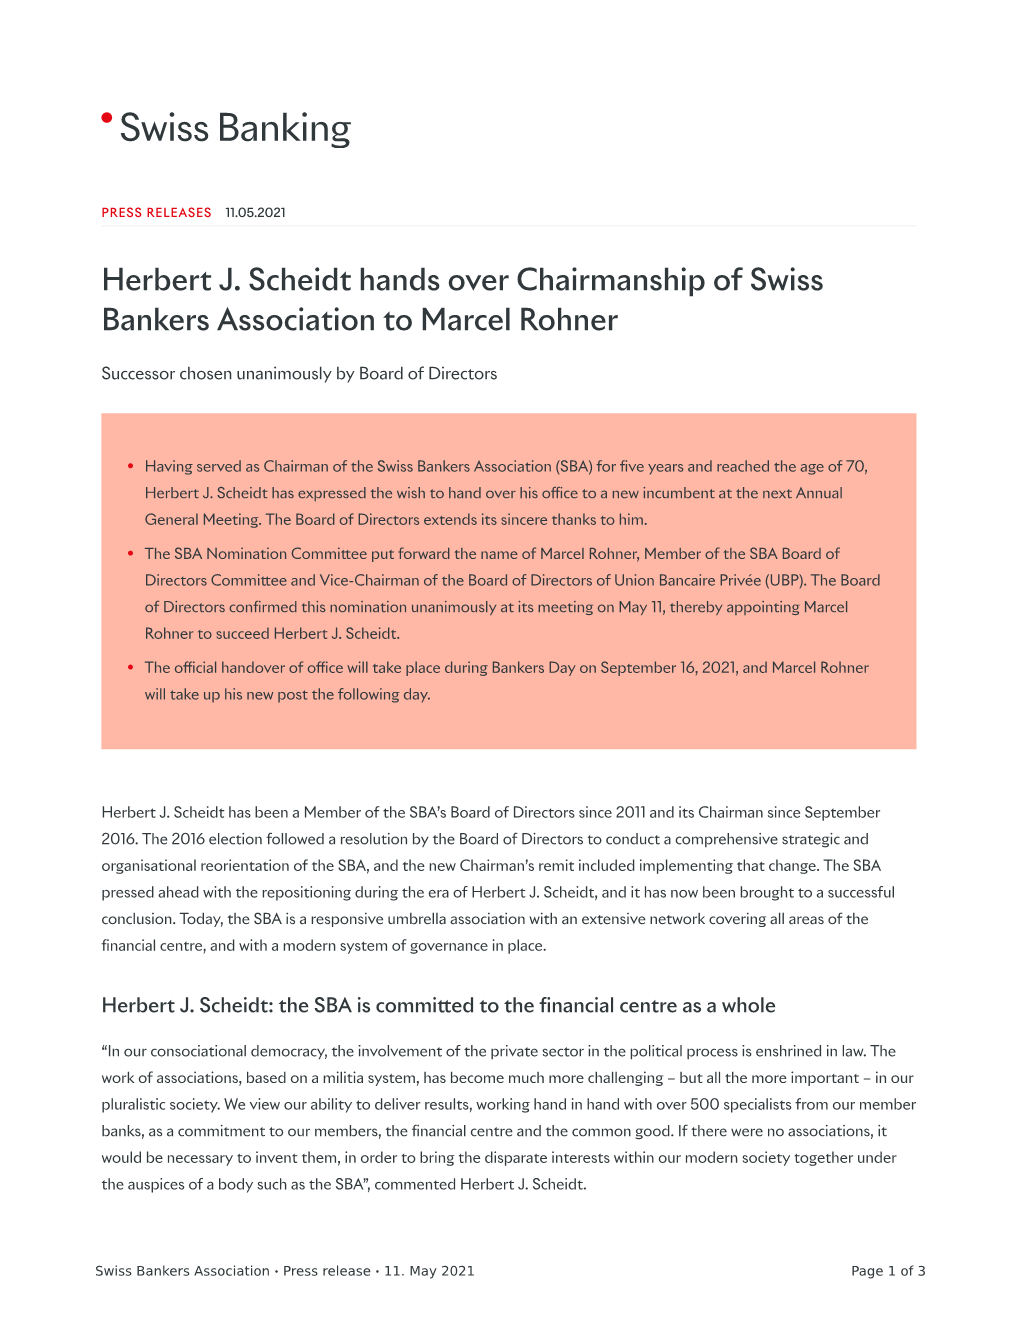 Herbert J. Scheidt Hands Over Chairmanship of Swiss Bankers Association to Marcel Rohner